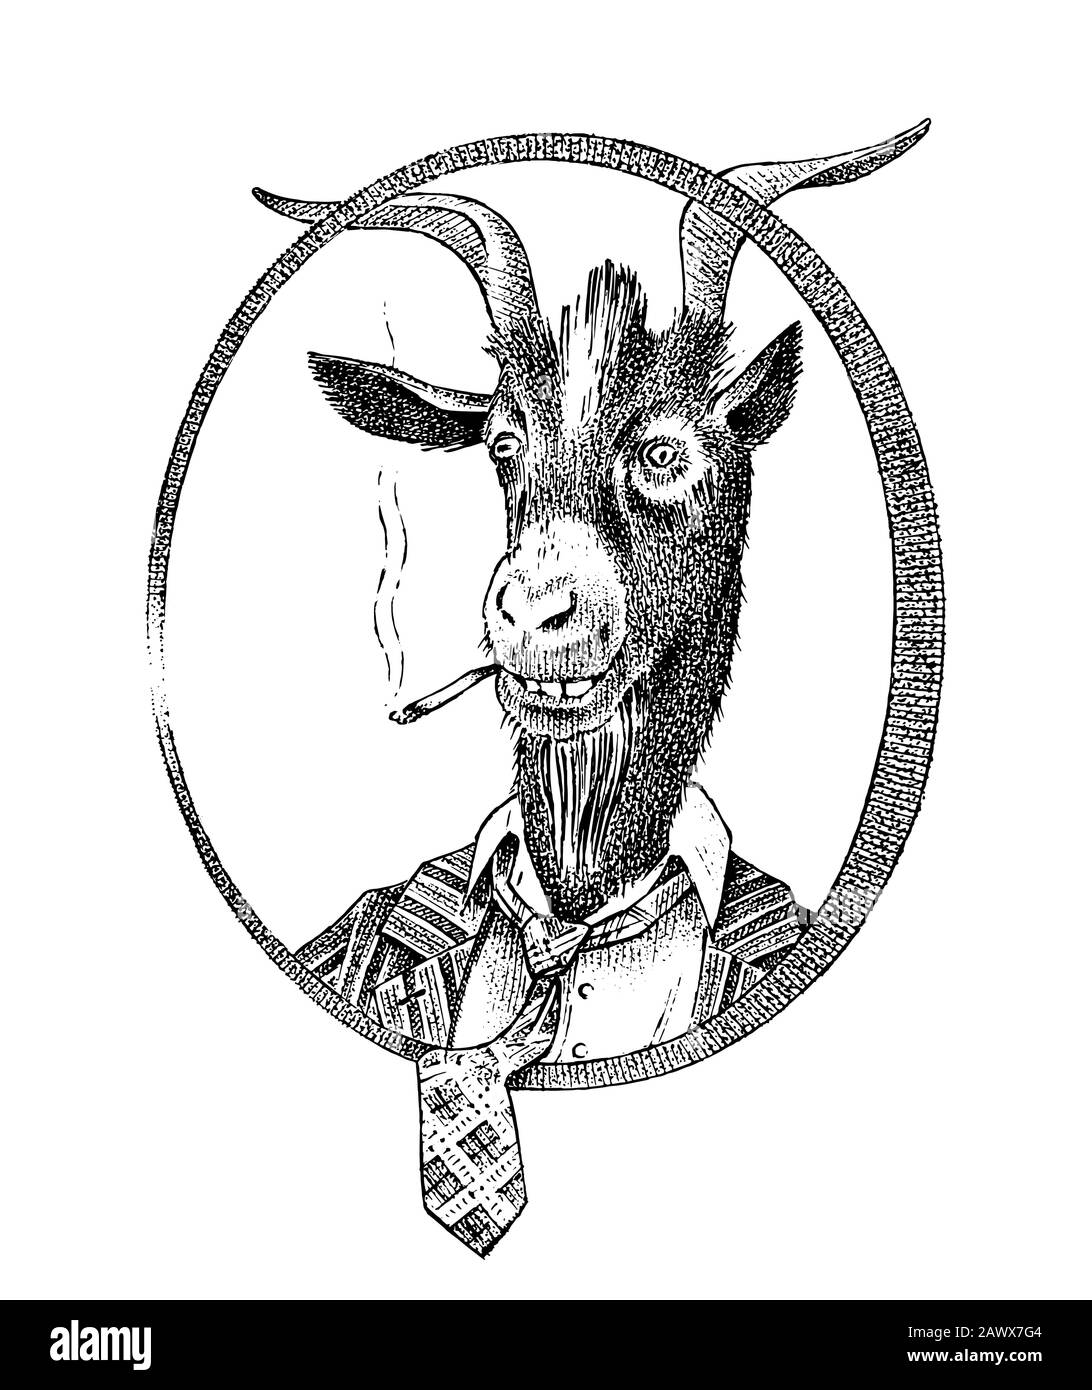 Fumo studente di capra o pecora. Ritratto di persona di animale disegnato a mano. Disegno monocromatico inciso per carta, etichetta o tatuaggio. Hippster Illustrazione Vettoriale